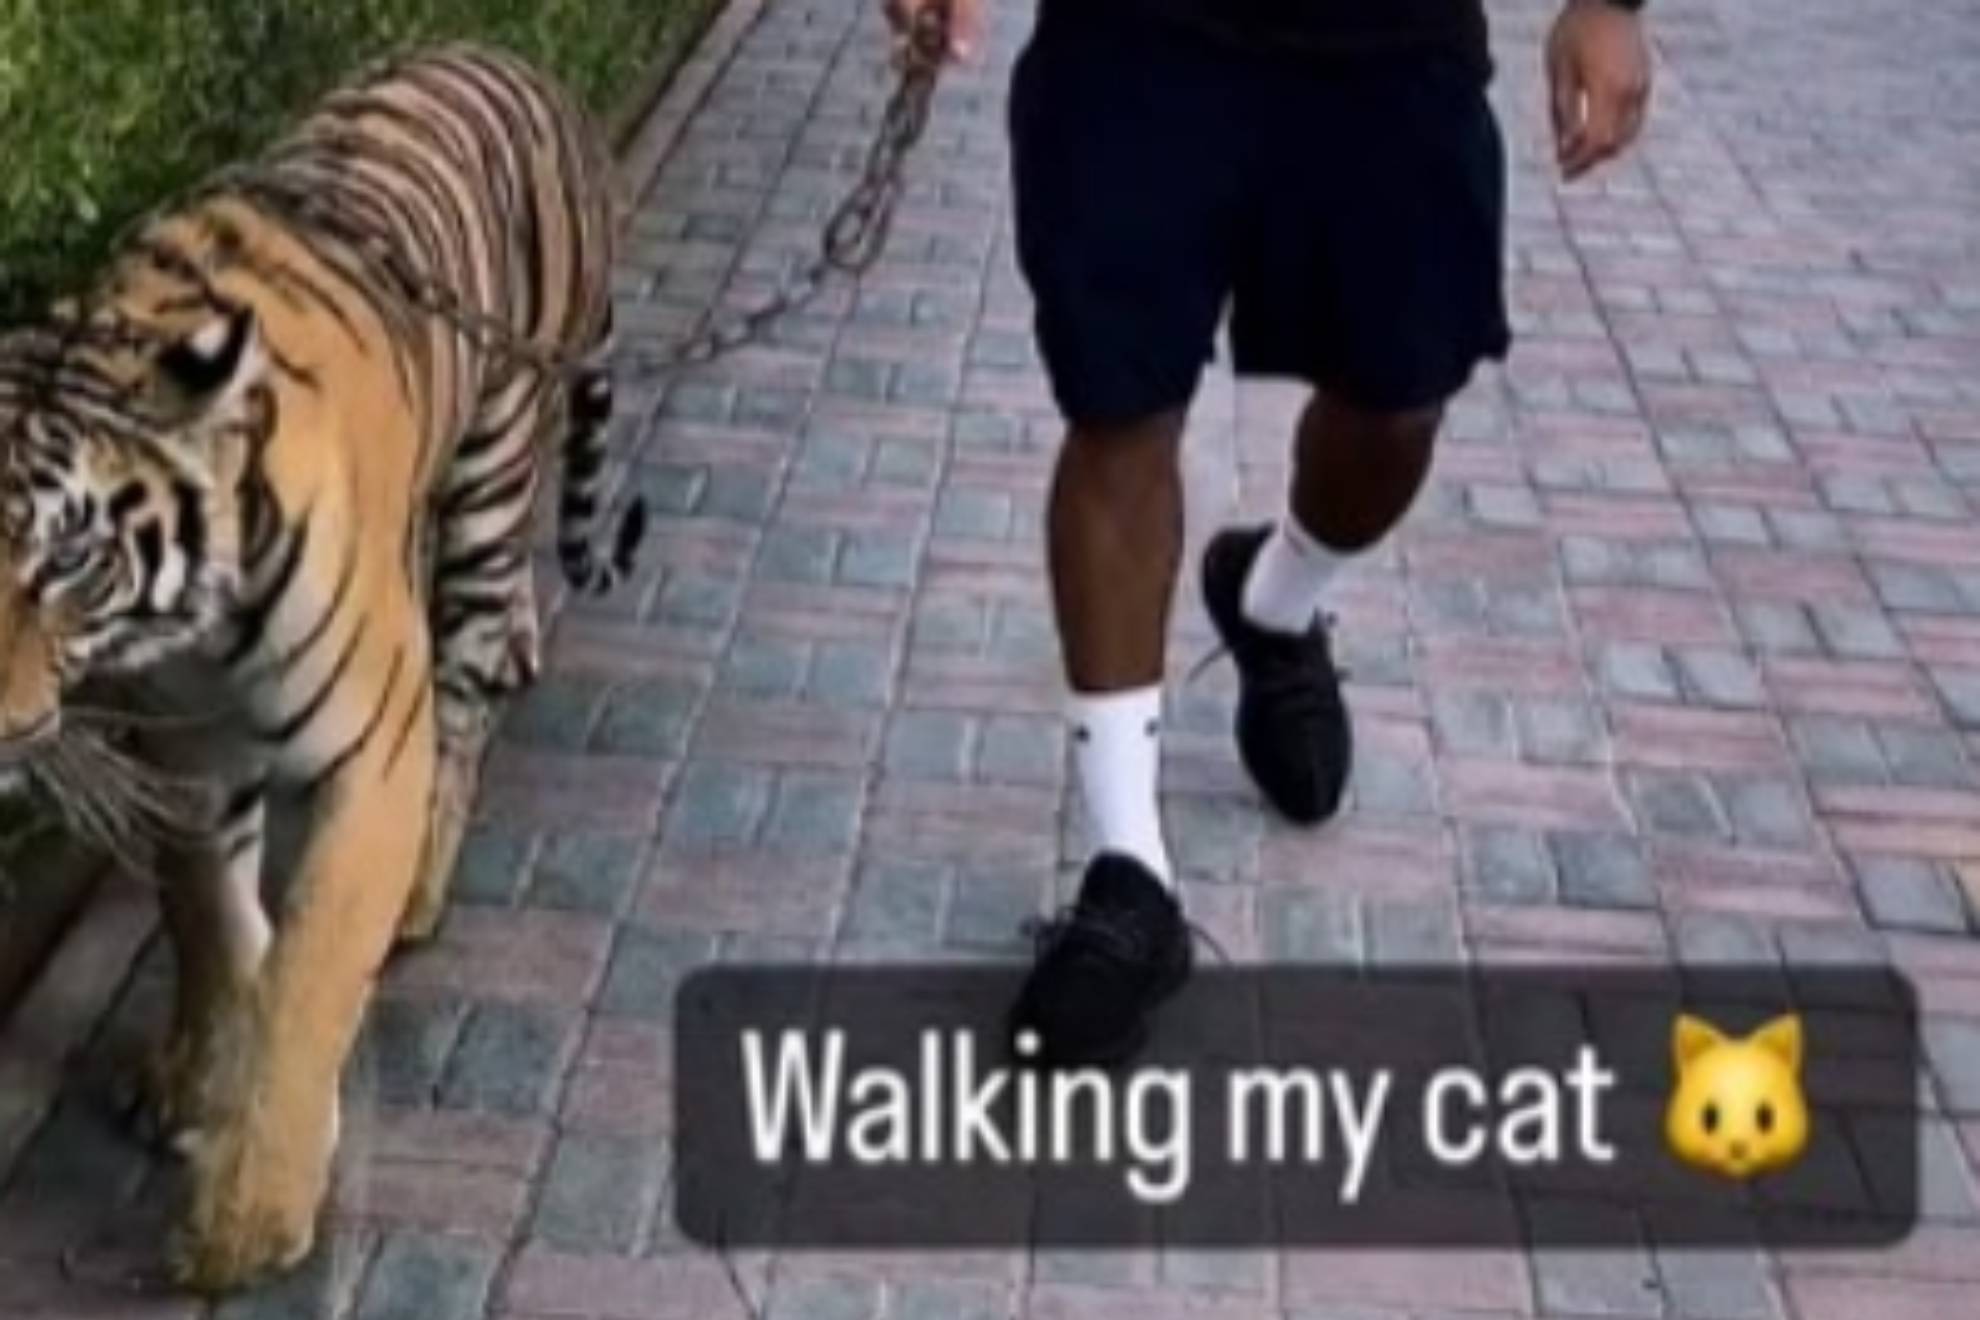 Un futbolista internacional ex del City camina con un tigre por la calle: "Paseando a mi gato"